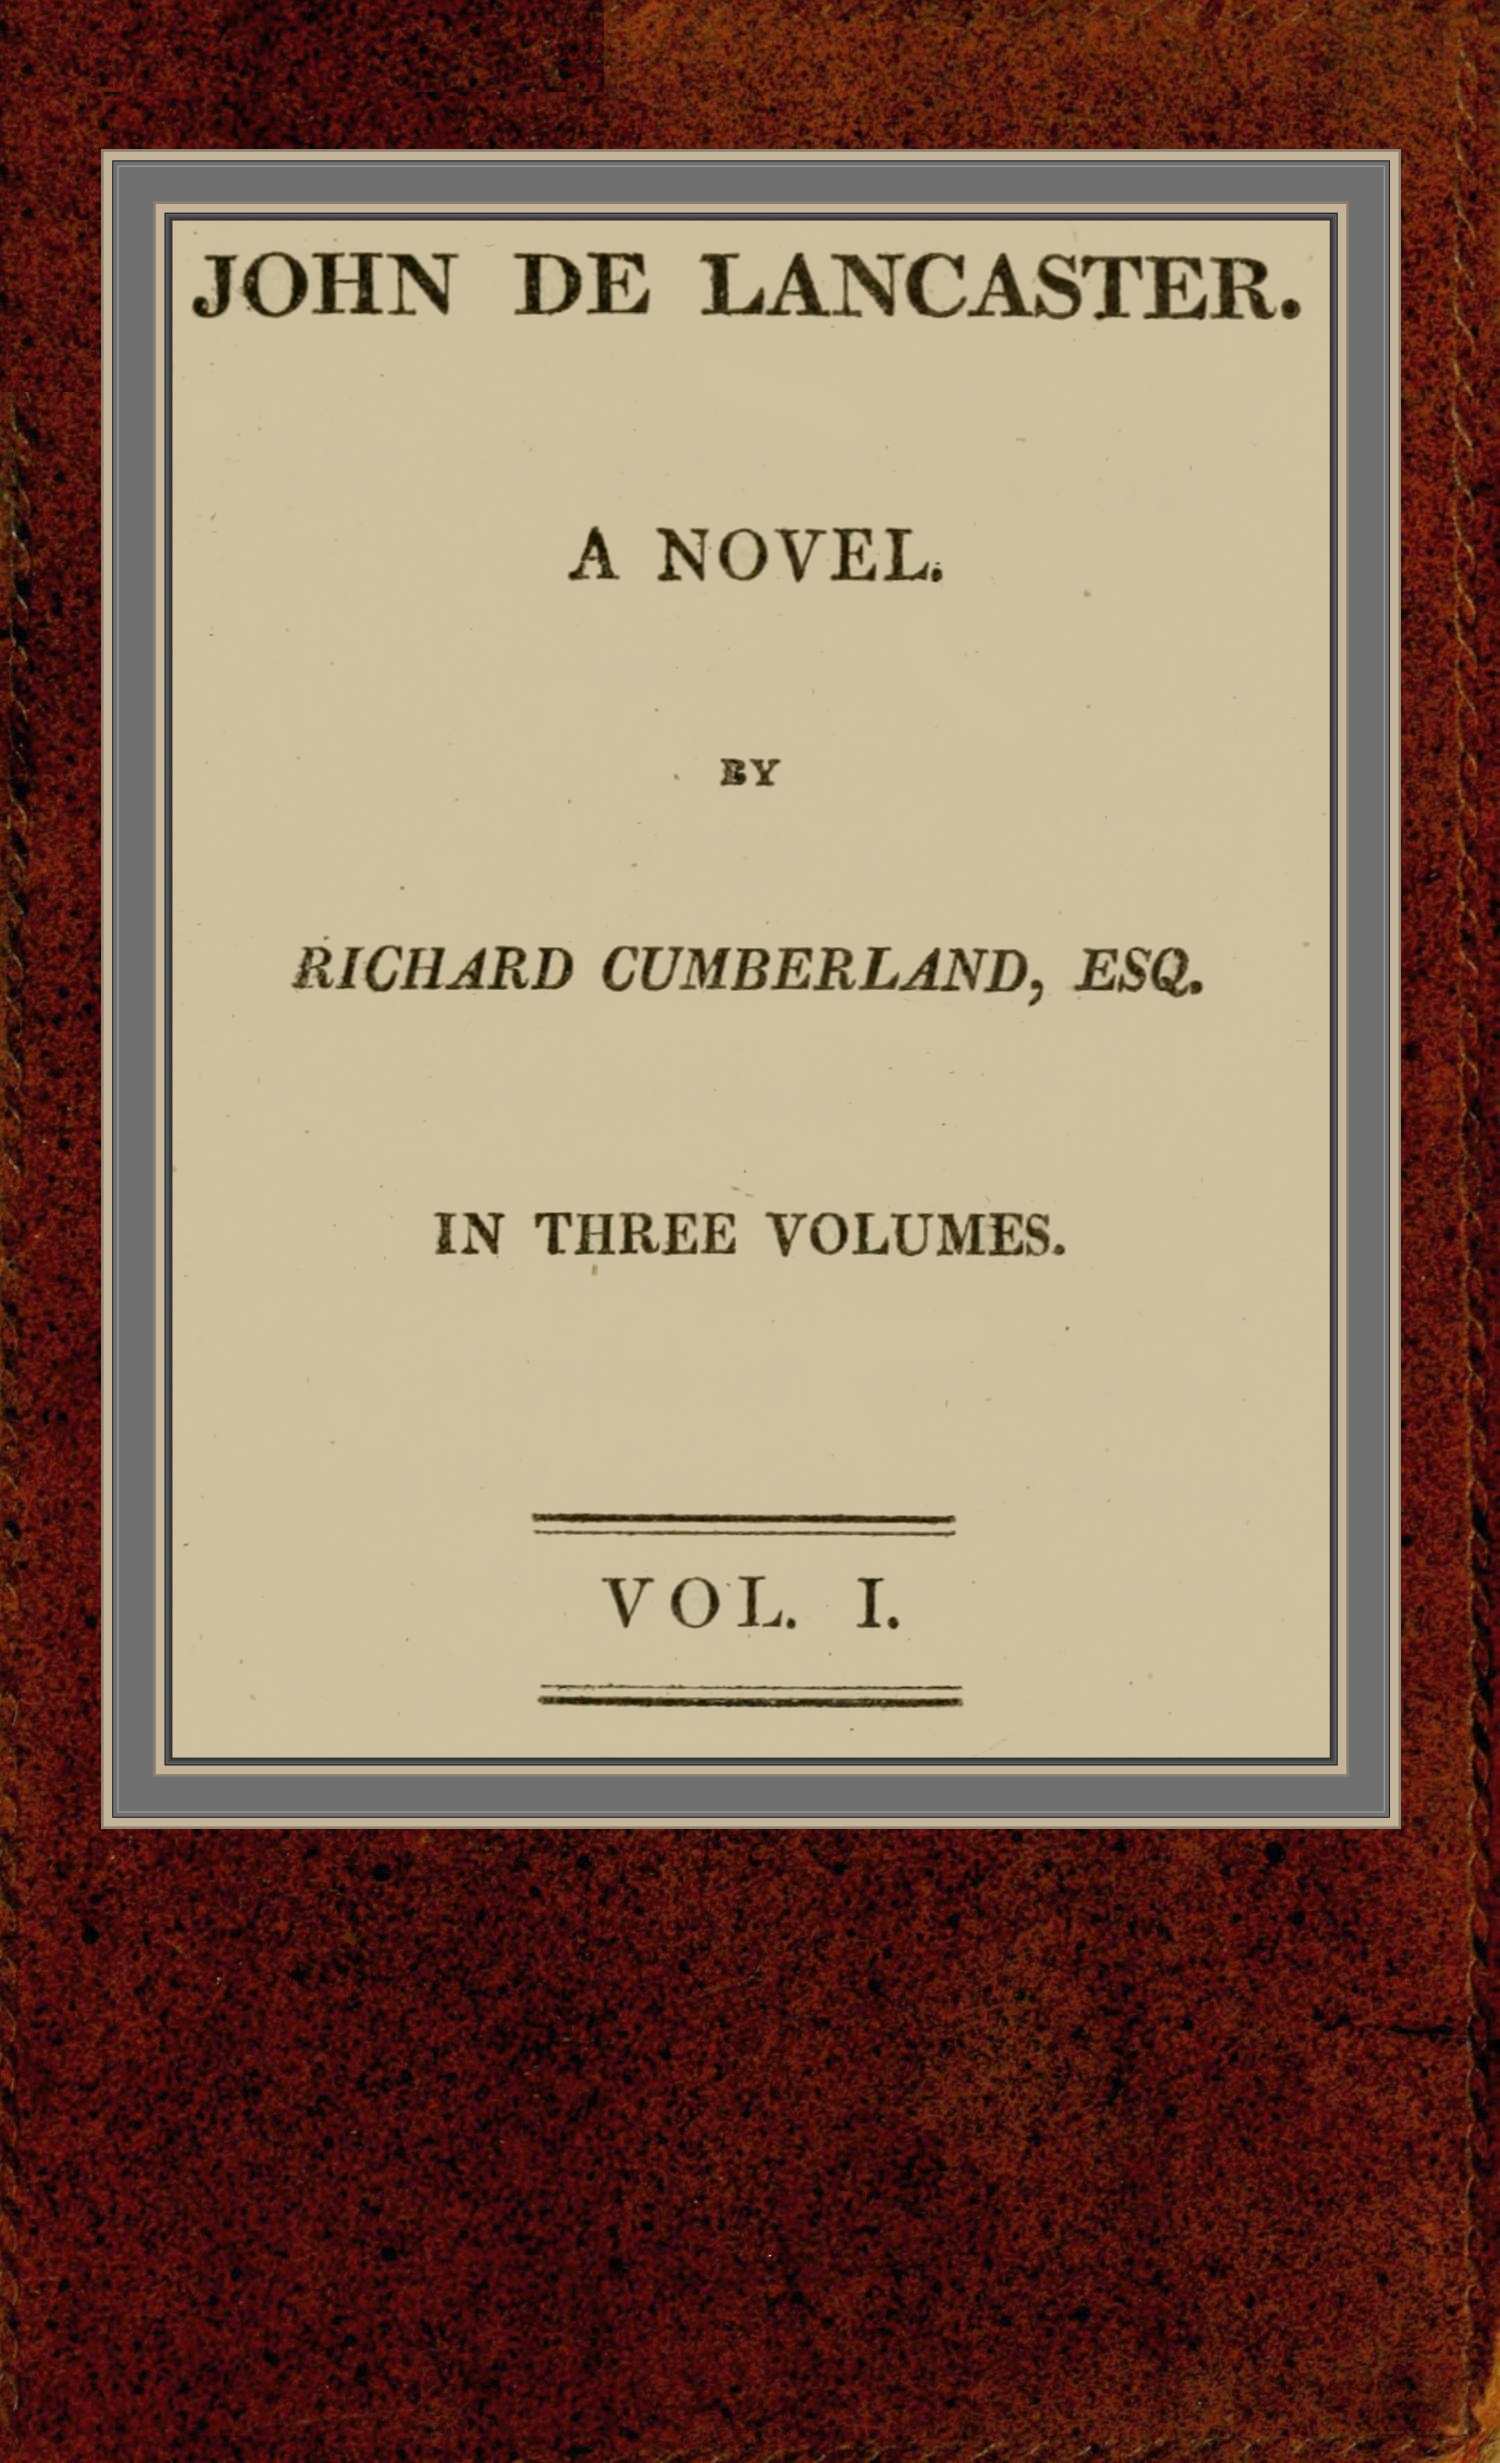 John de Lancaster: a novel; vol. I.